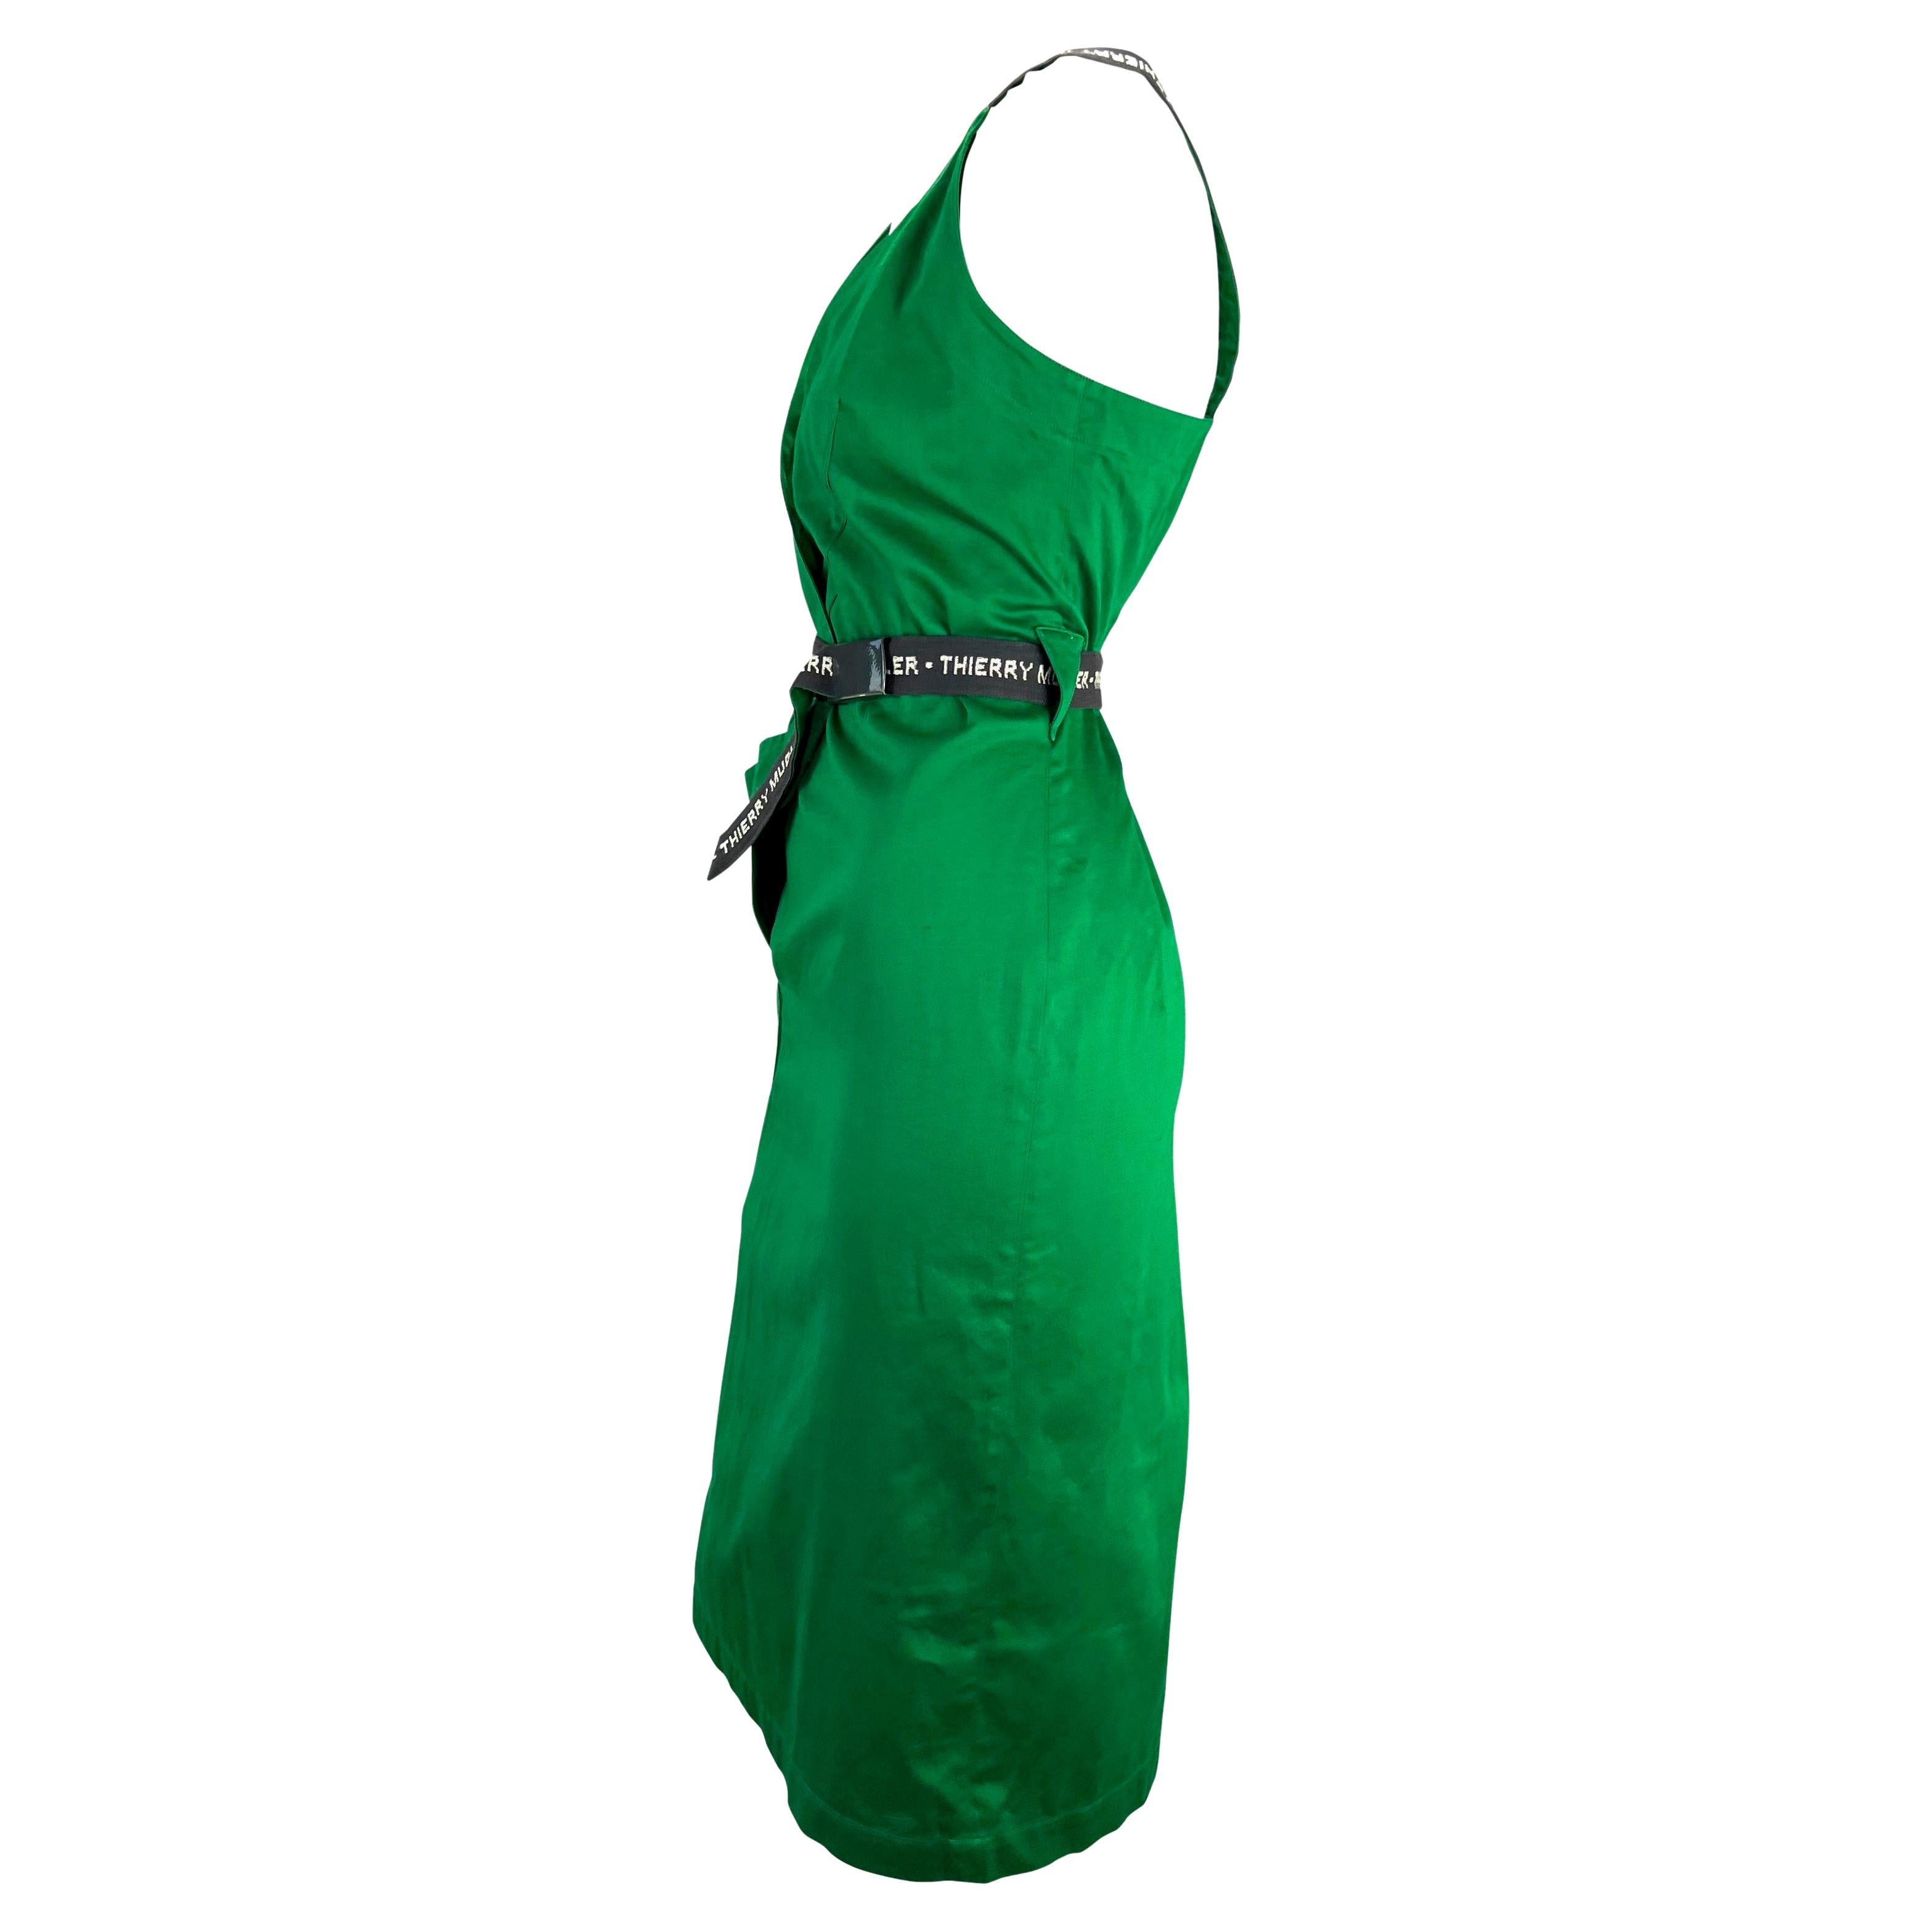 thierry mugler green dress